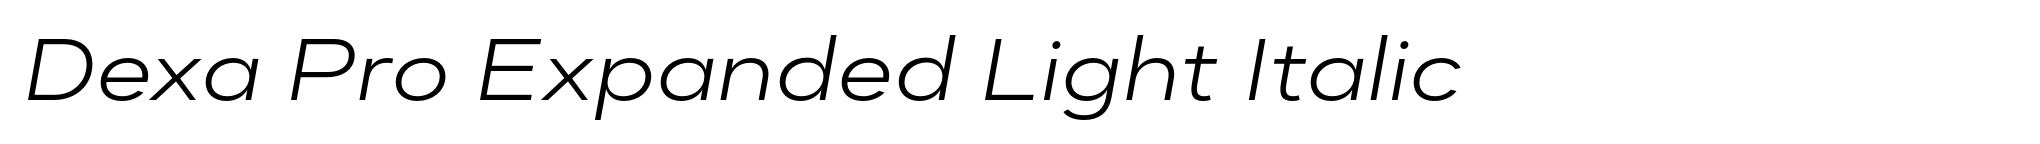 Dexa Pro Expanded Light Italic image